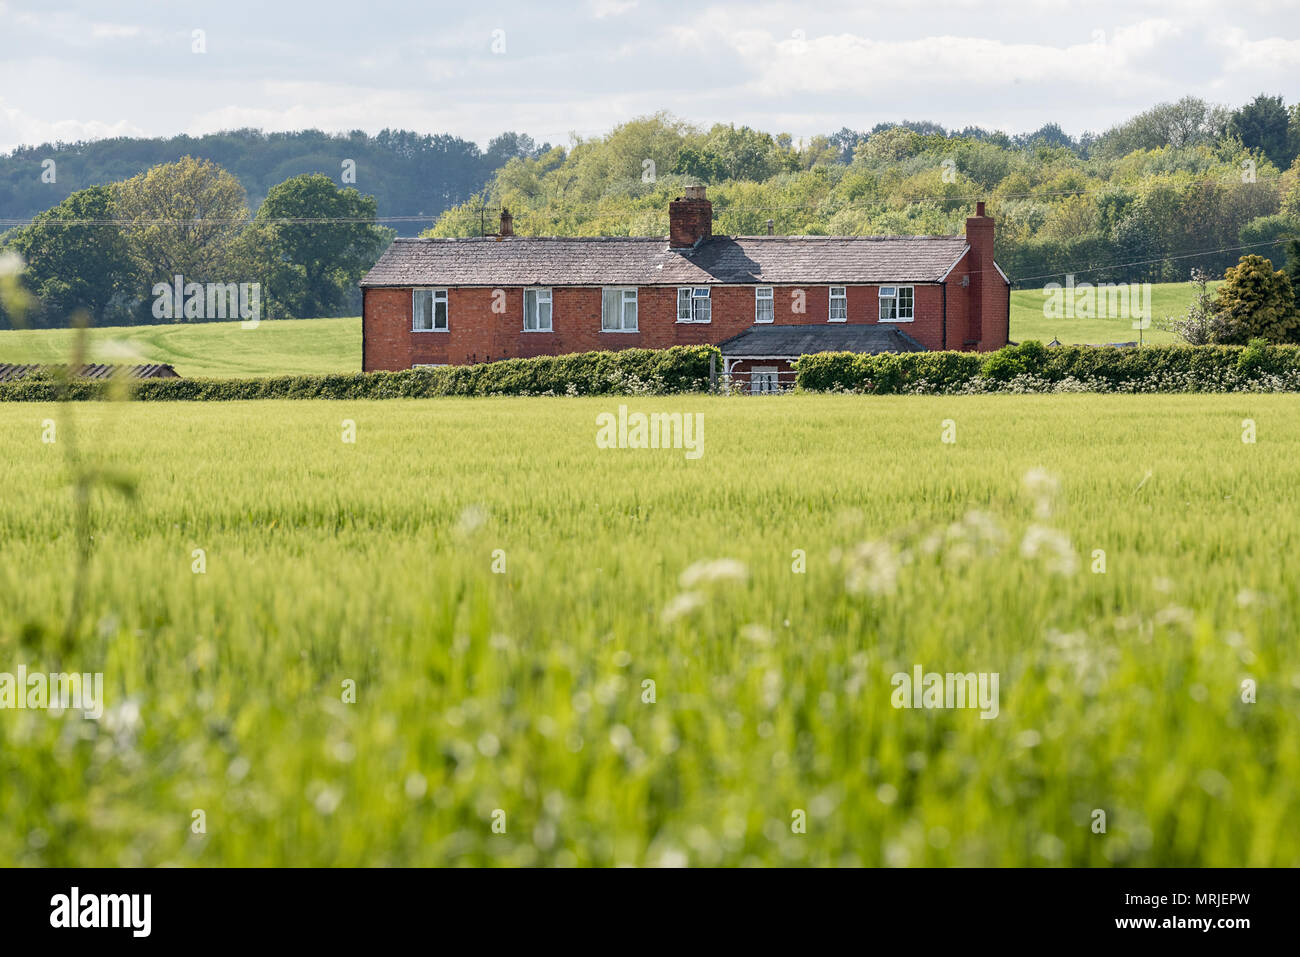 Eine Landschaft aus rotem Backstein Haus steht stolz über ein Feld der grünen Labyrinth Fruchtarten in einem grünen Land Einstellung, Worcestershire, England. Stockfoto